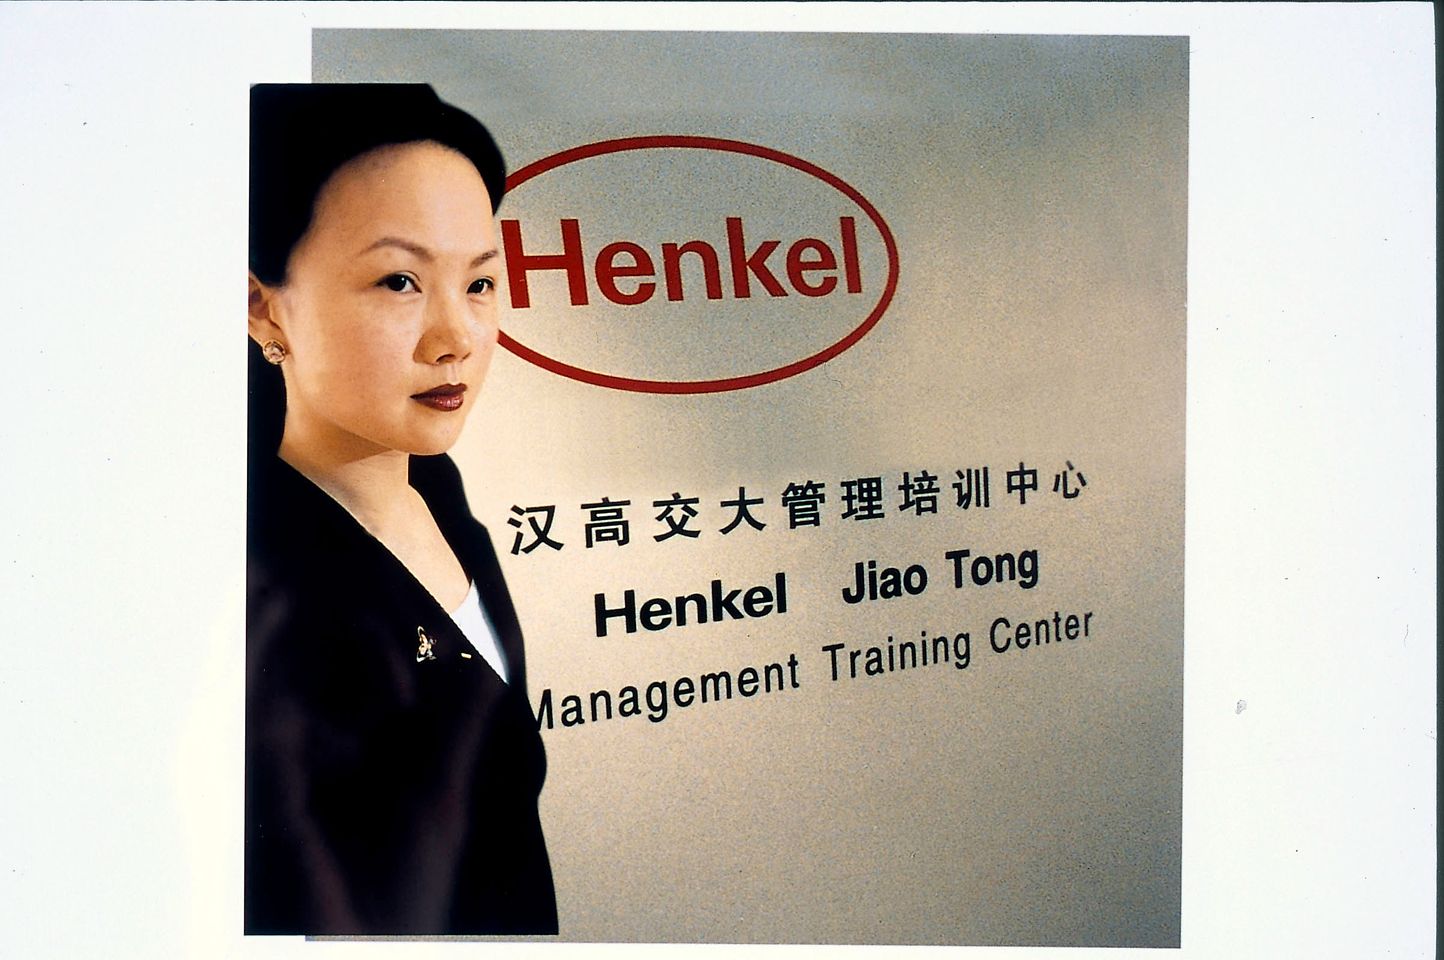 1997-henkel-jiao-tong.jpg